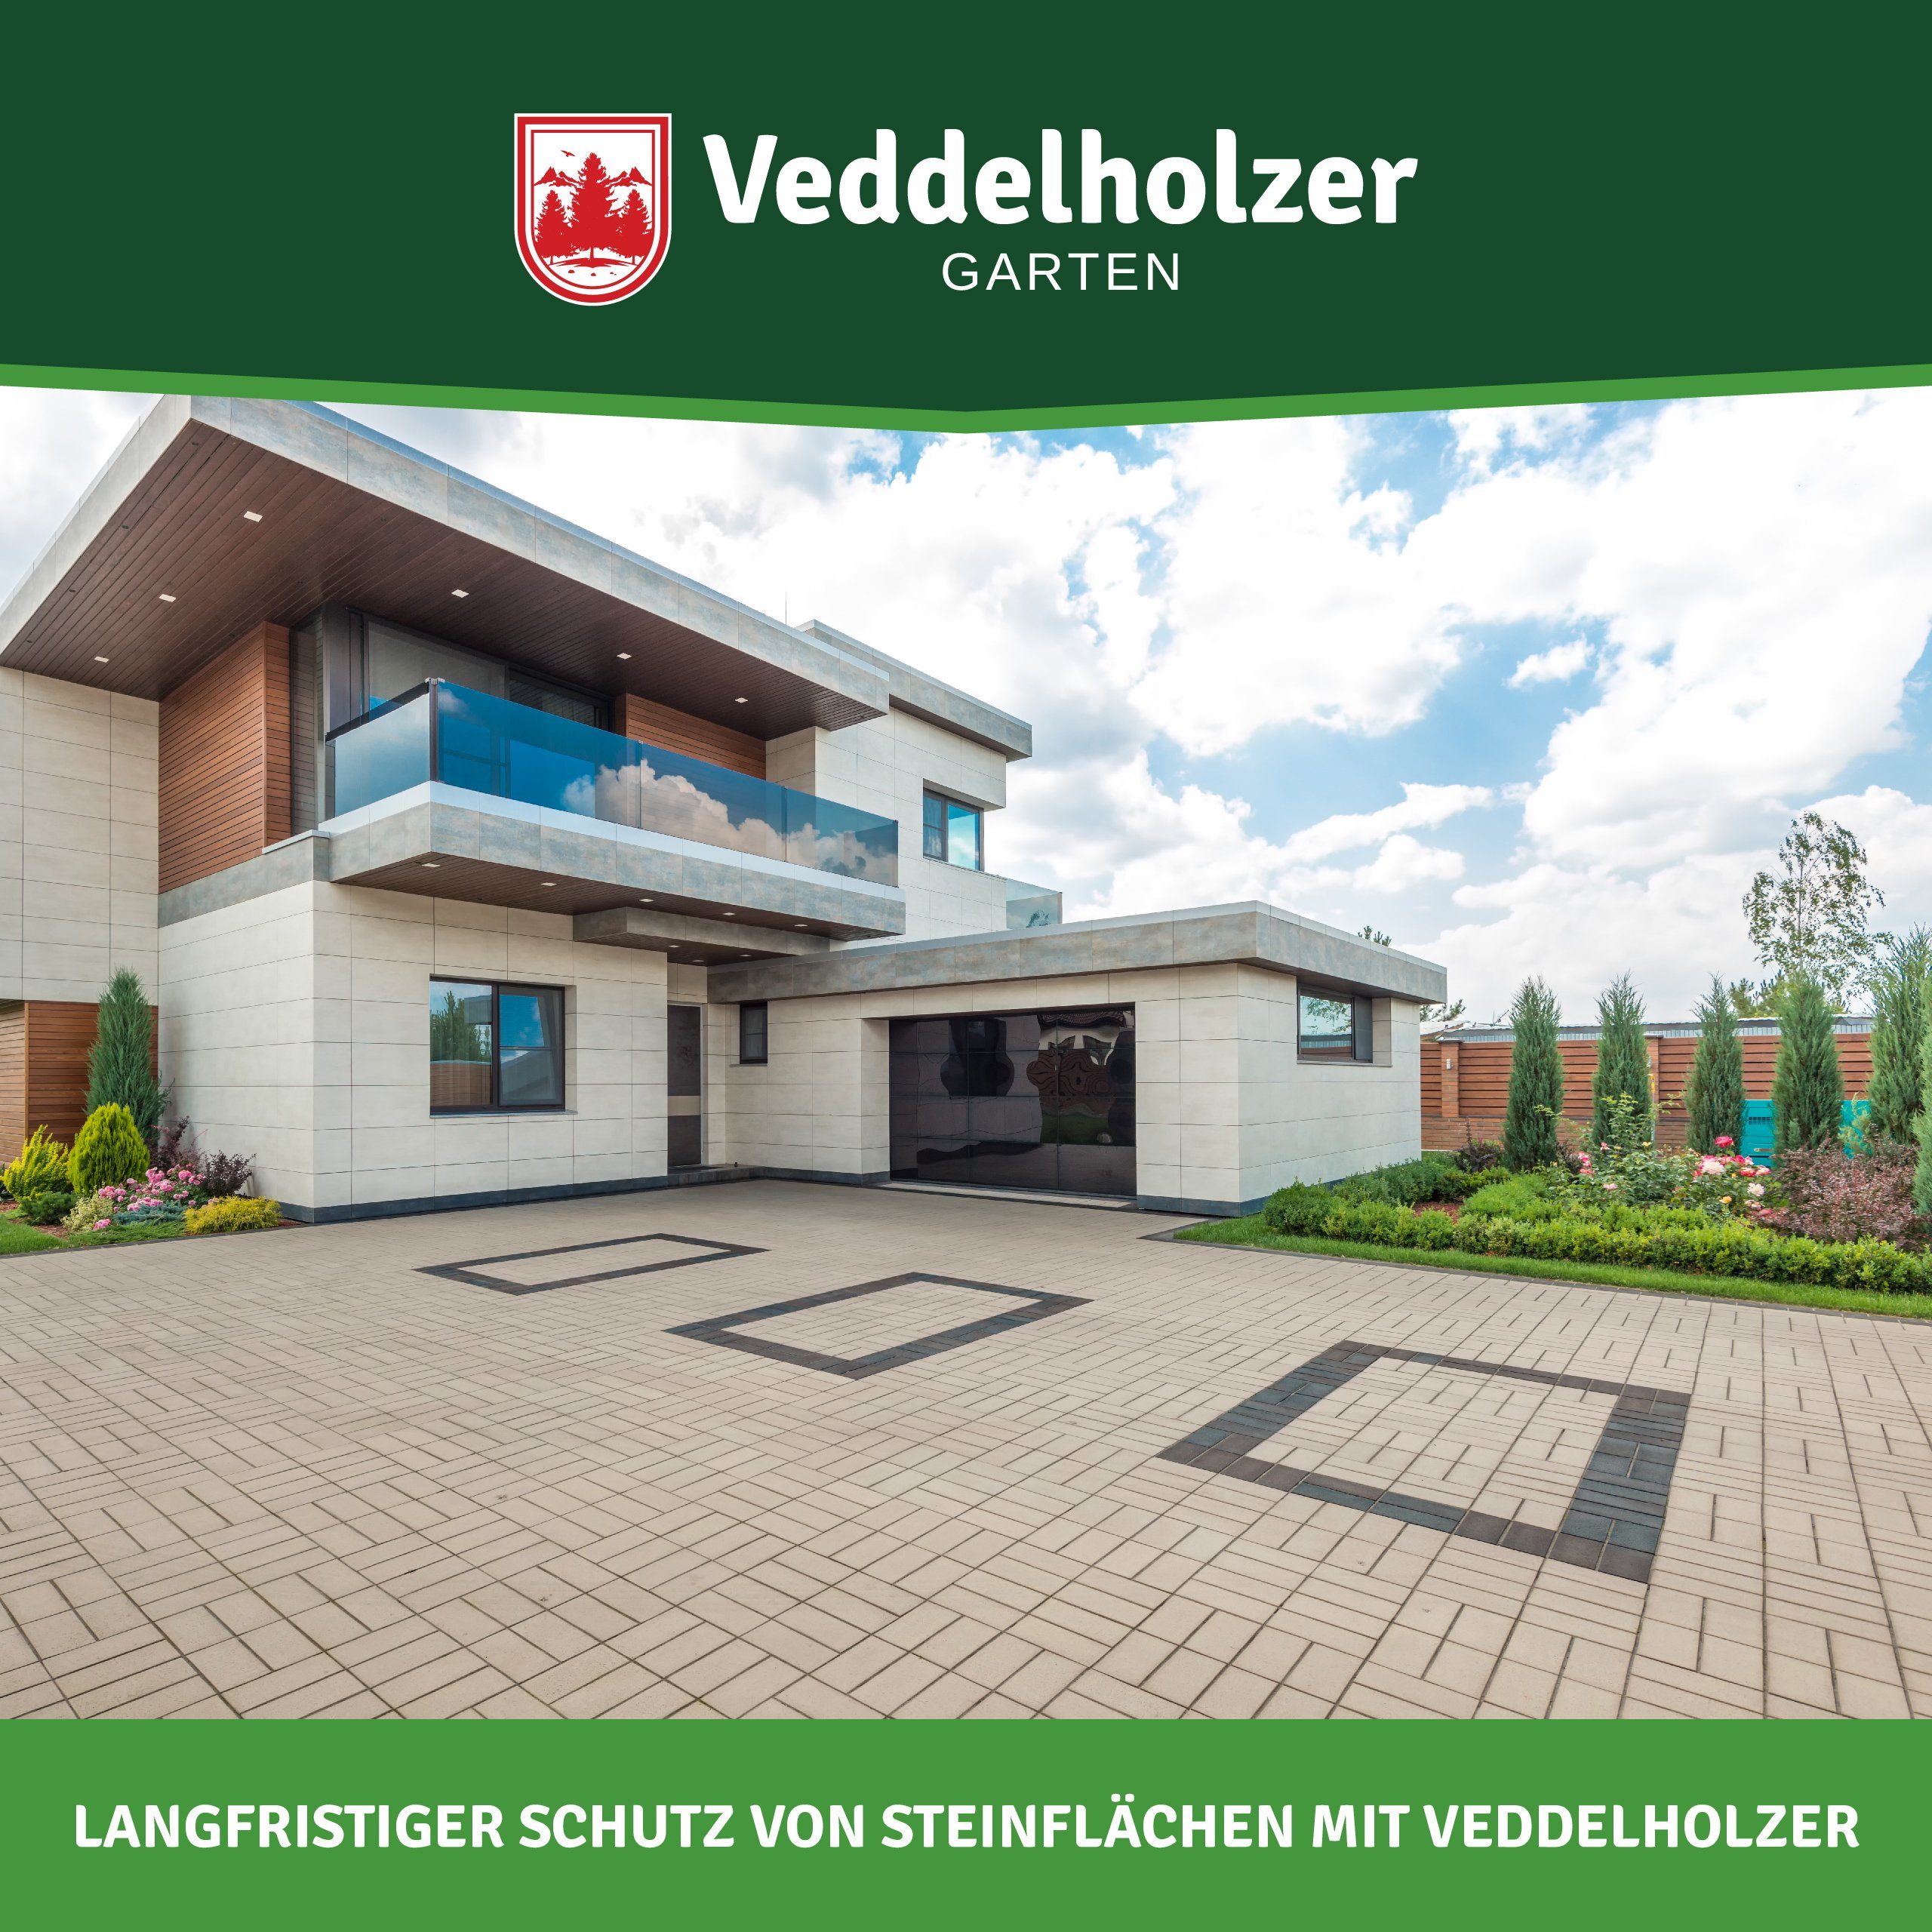 Veddelholzer Garten 5 L Steinversiegelung anwendbar Oberflächen saugfähigen Naturstein-Imprägnierung für universell